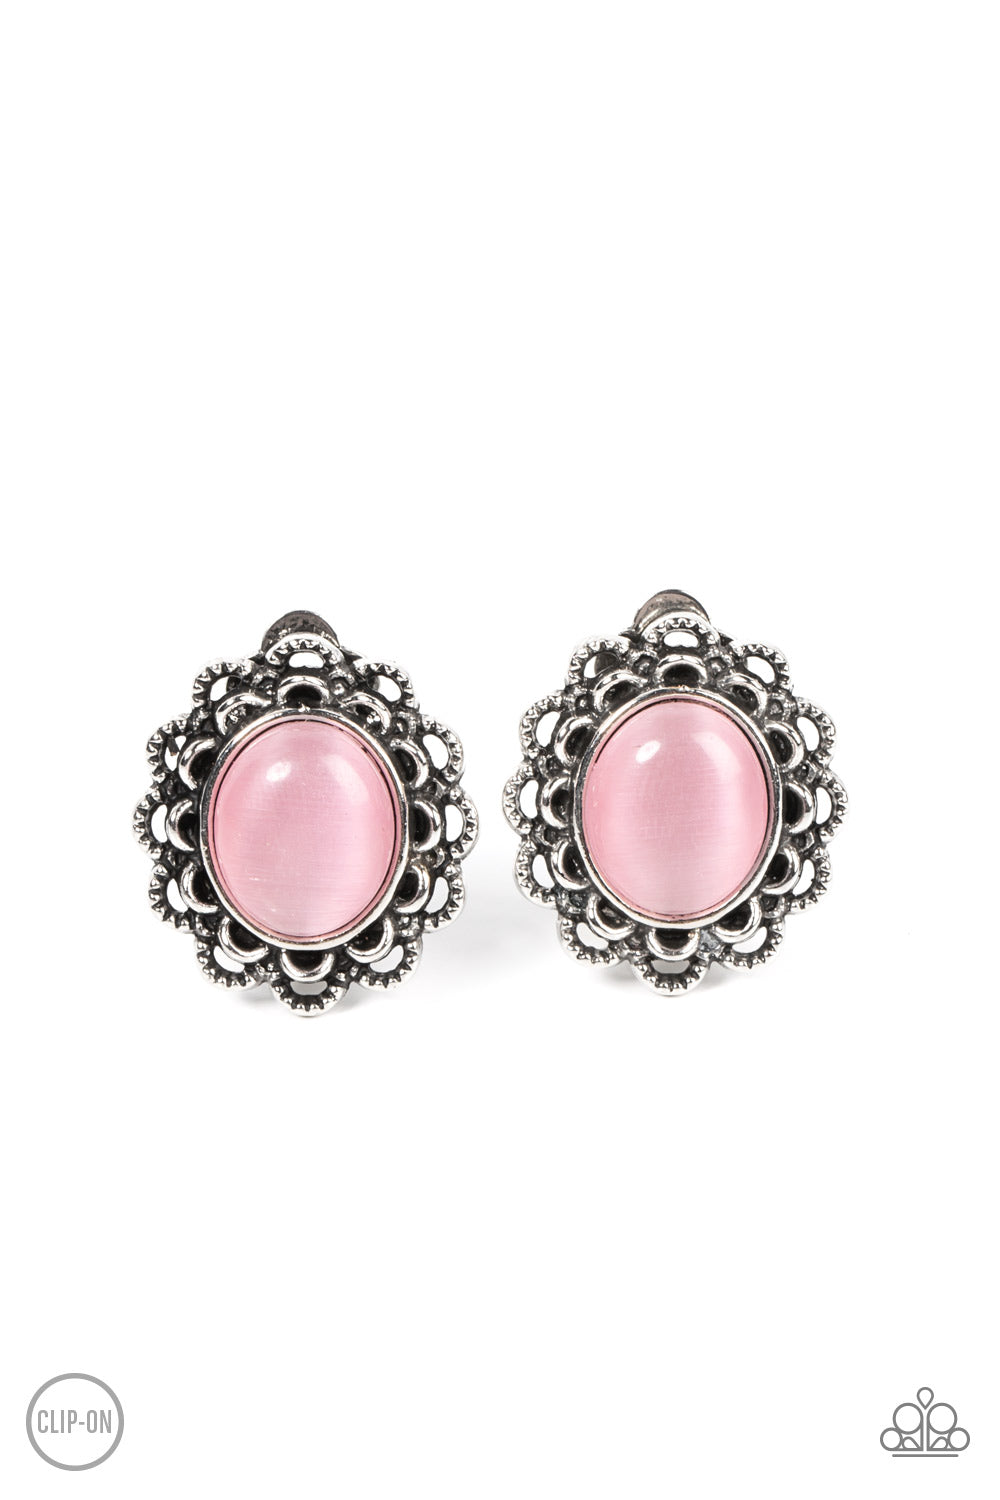 Garden Gazebo - Pink Cat's Eye Stone Clip On Earrings - Paparazzi Accessories